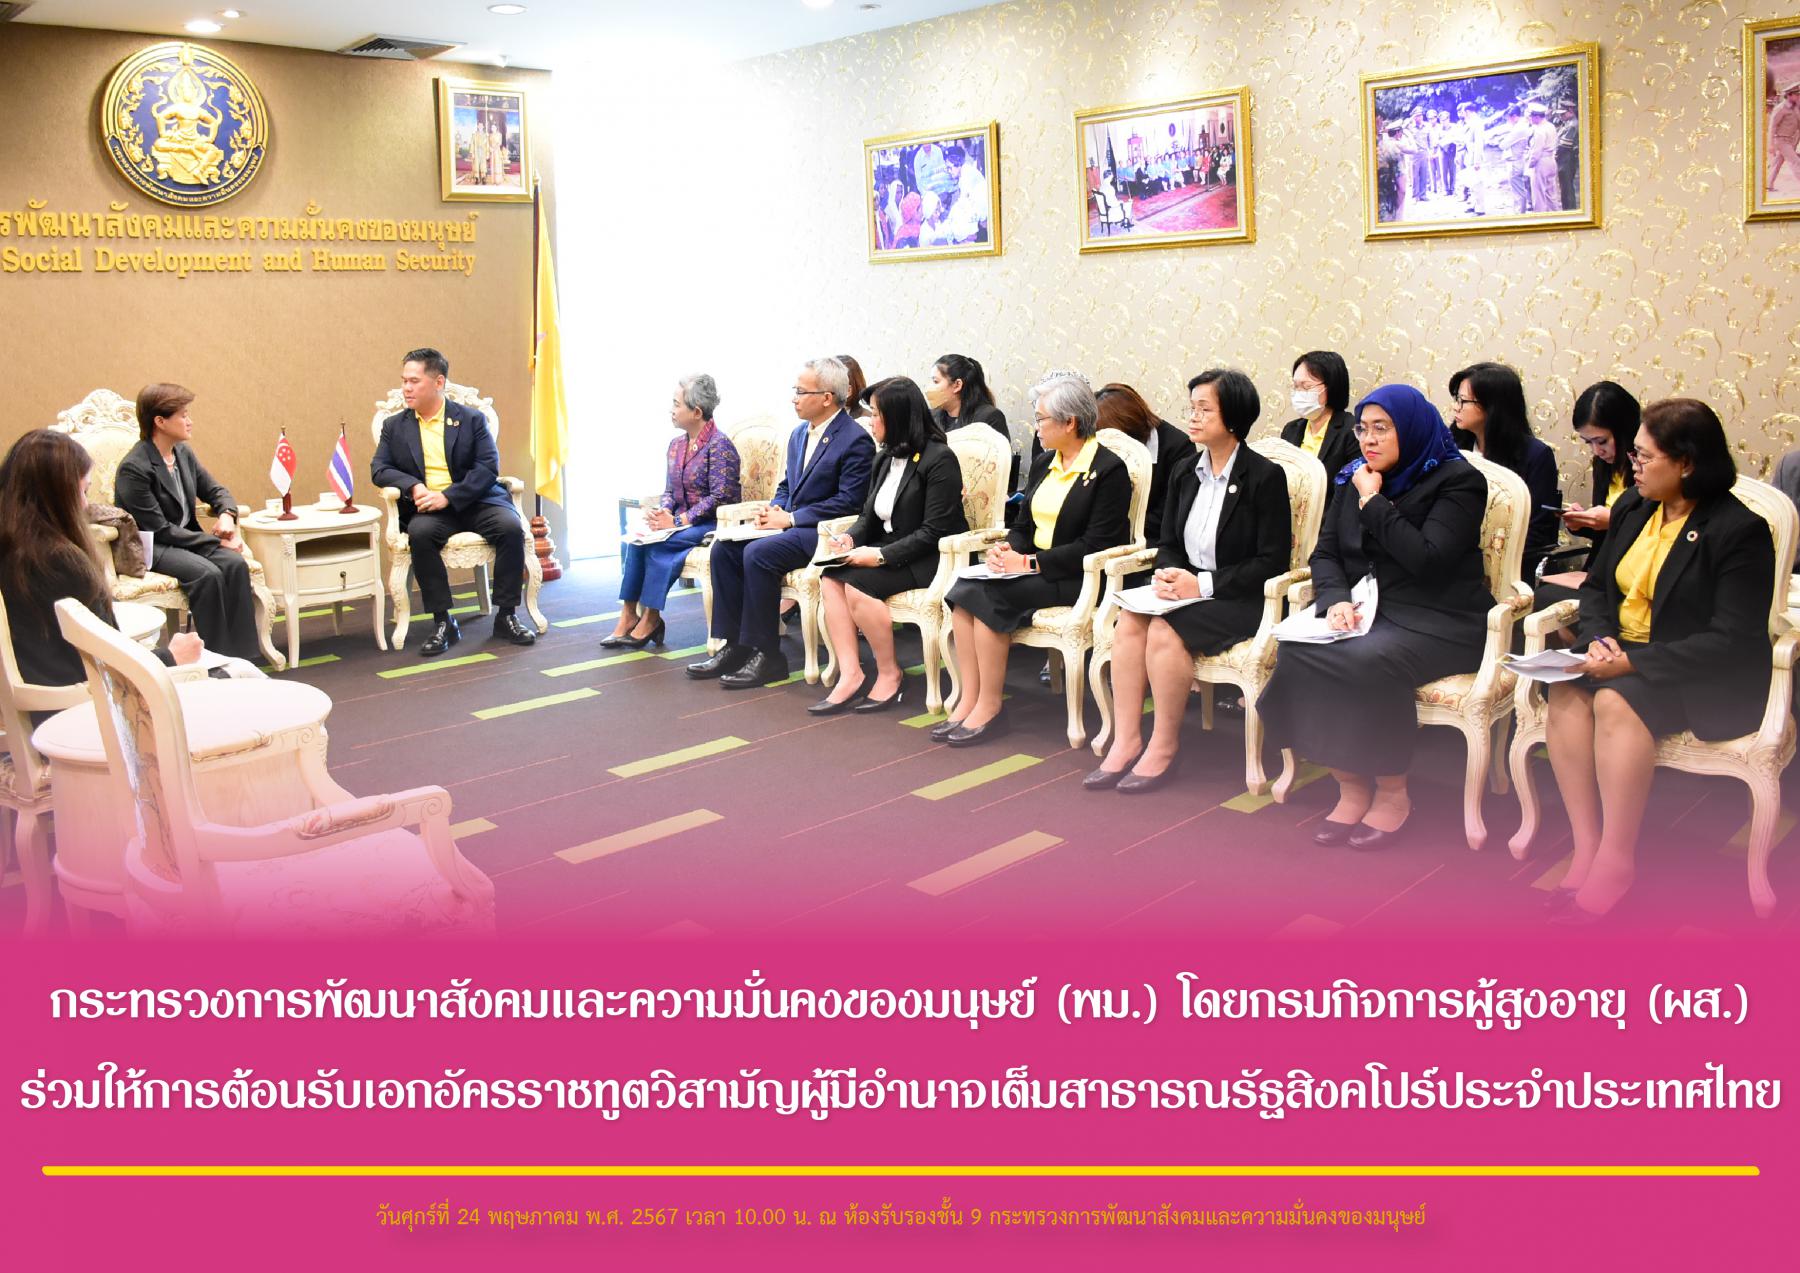 กระทรวงการพัฒนาสังคมและความมั่นคงของมนุษย์ (พม.) โดยกรมกิจการผู้สูงอายุ (ผส.) ร่วมให้การต้อนรับเอกอัครราชทูตวิสามัญผู้มีอำนาจเต็มสาธารณรัฐสิงคโปร์ประจำประเทศไทย